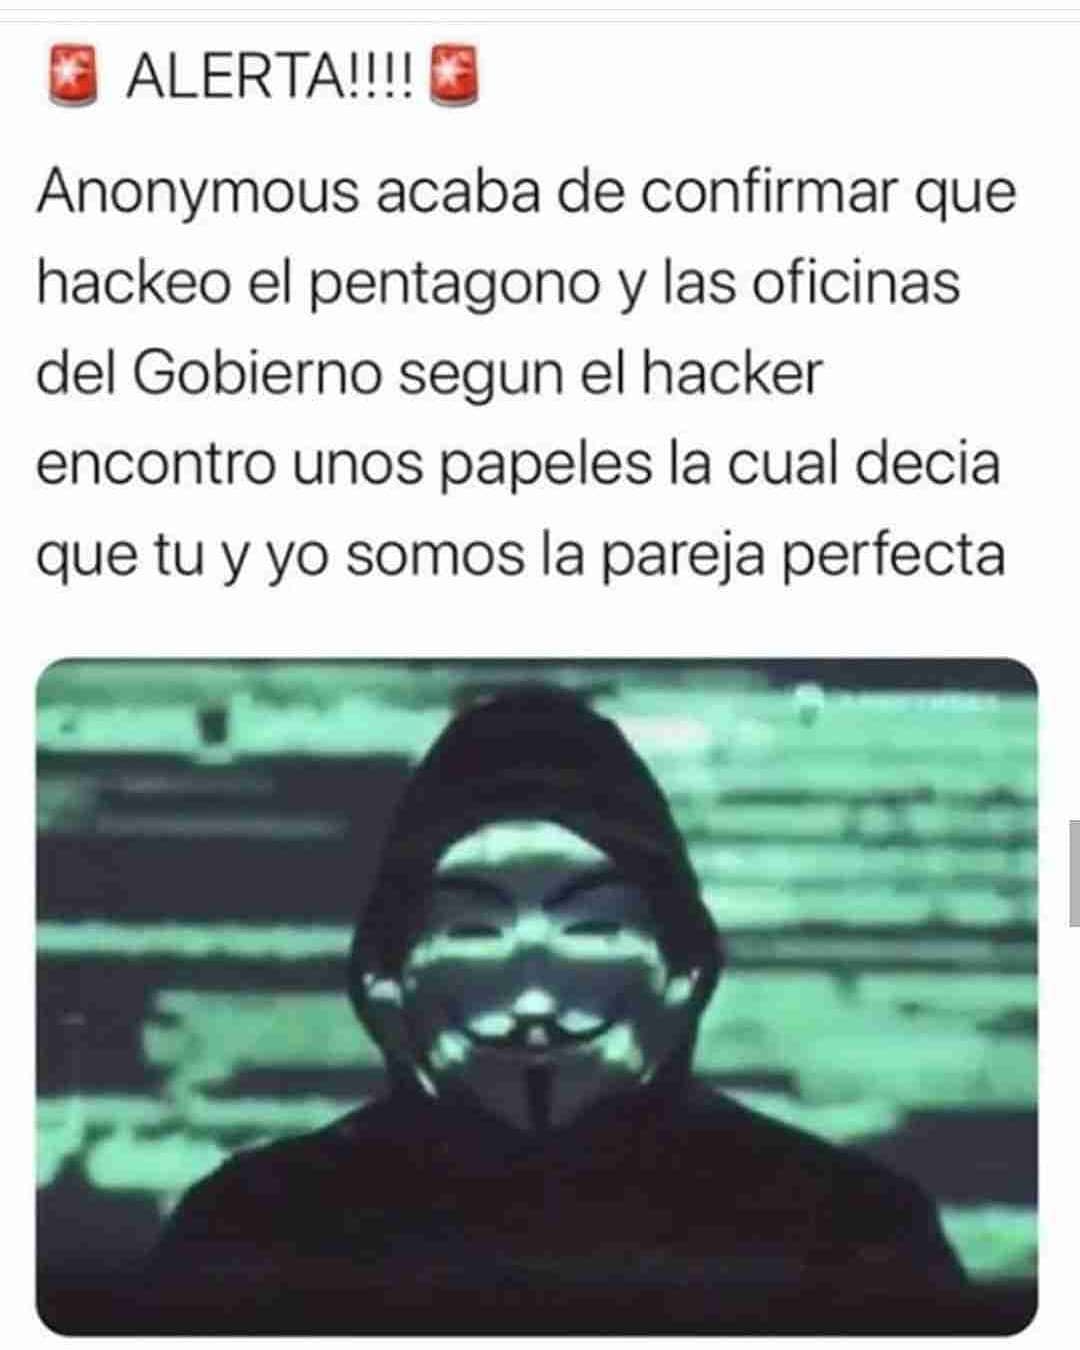 Alerta!!! Anonymous acaba de confirmar que hackeó el pentágono y las oficinas del gobierno. Según el hacker encontró unos papeles la cual decía que tú y yo somos la pareja perfecta.